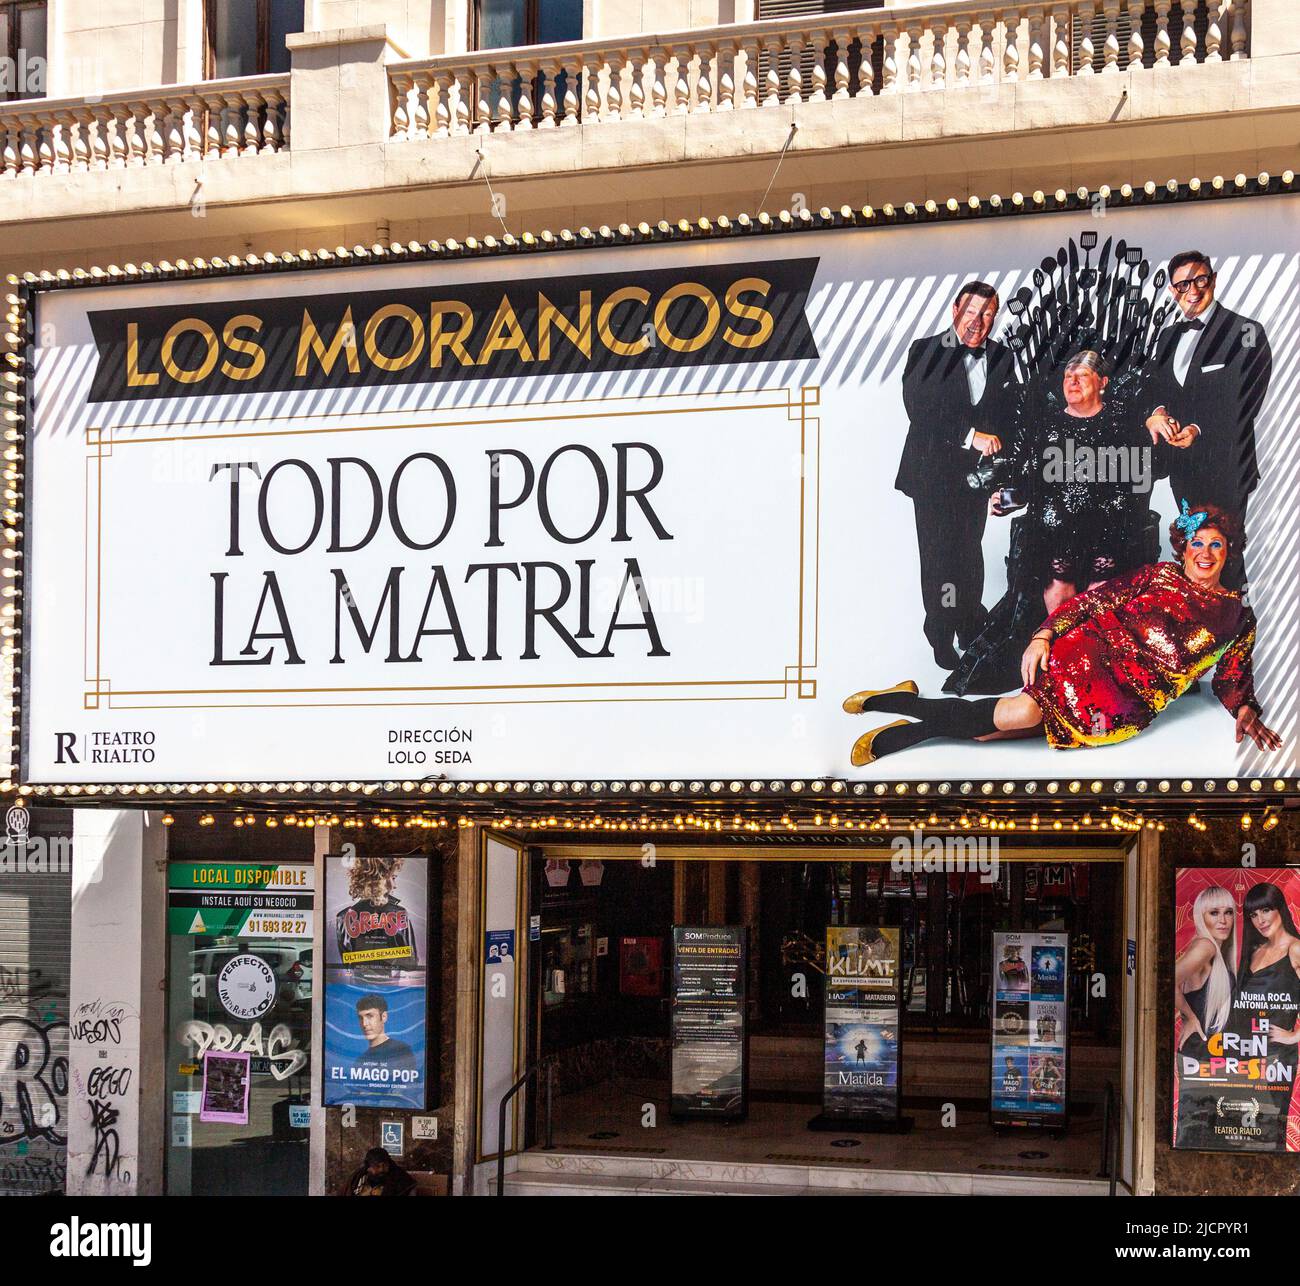 Carpa delante de la entrada al Teatro Rialto en el centro de Madrid anunciando un espectáculo llamado Todo por la Matria protagonizado por Los Morancos. Foto de stock